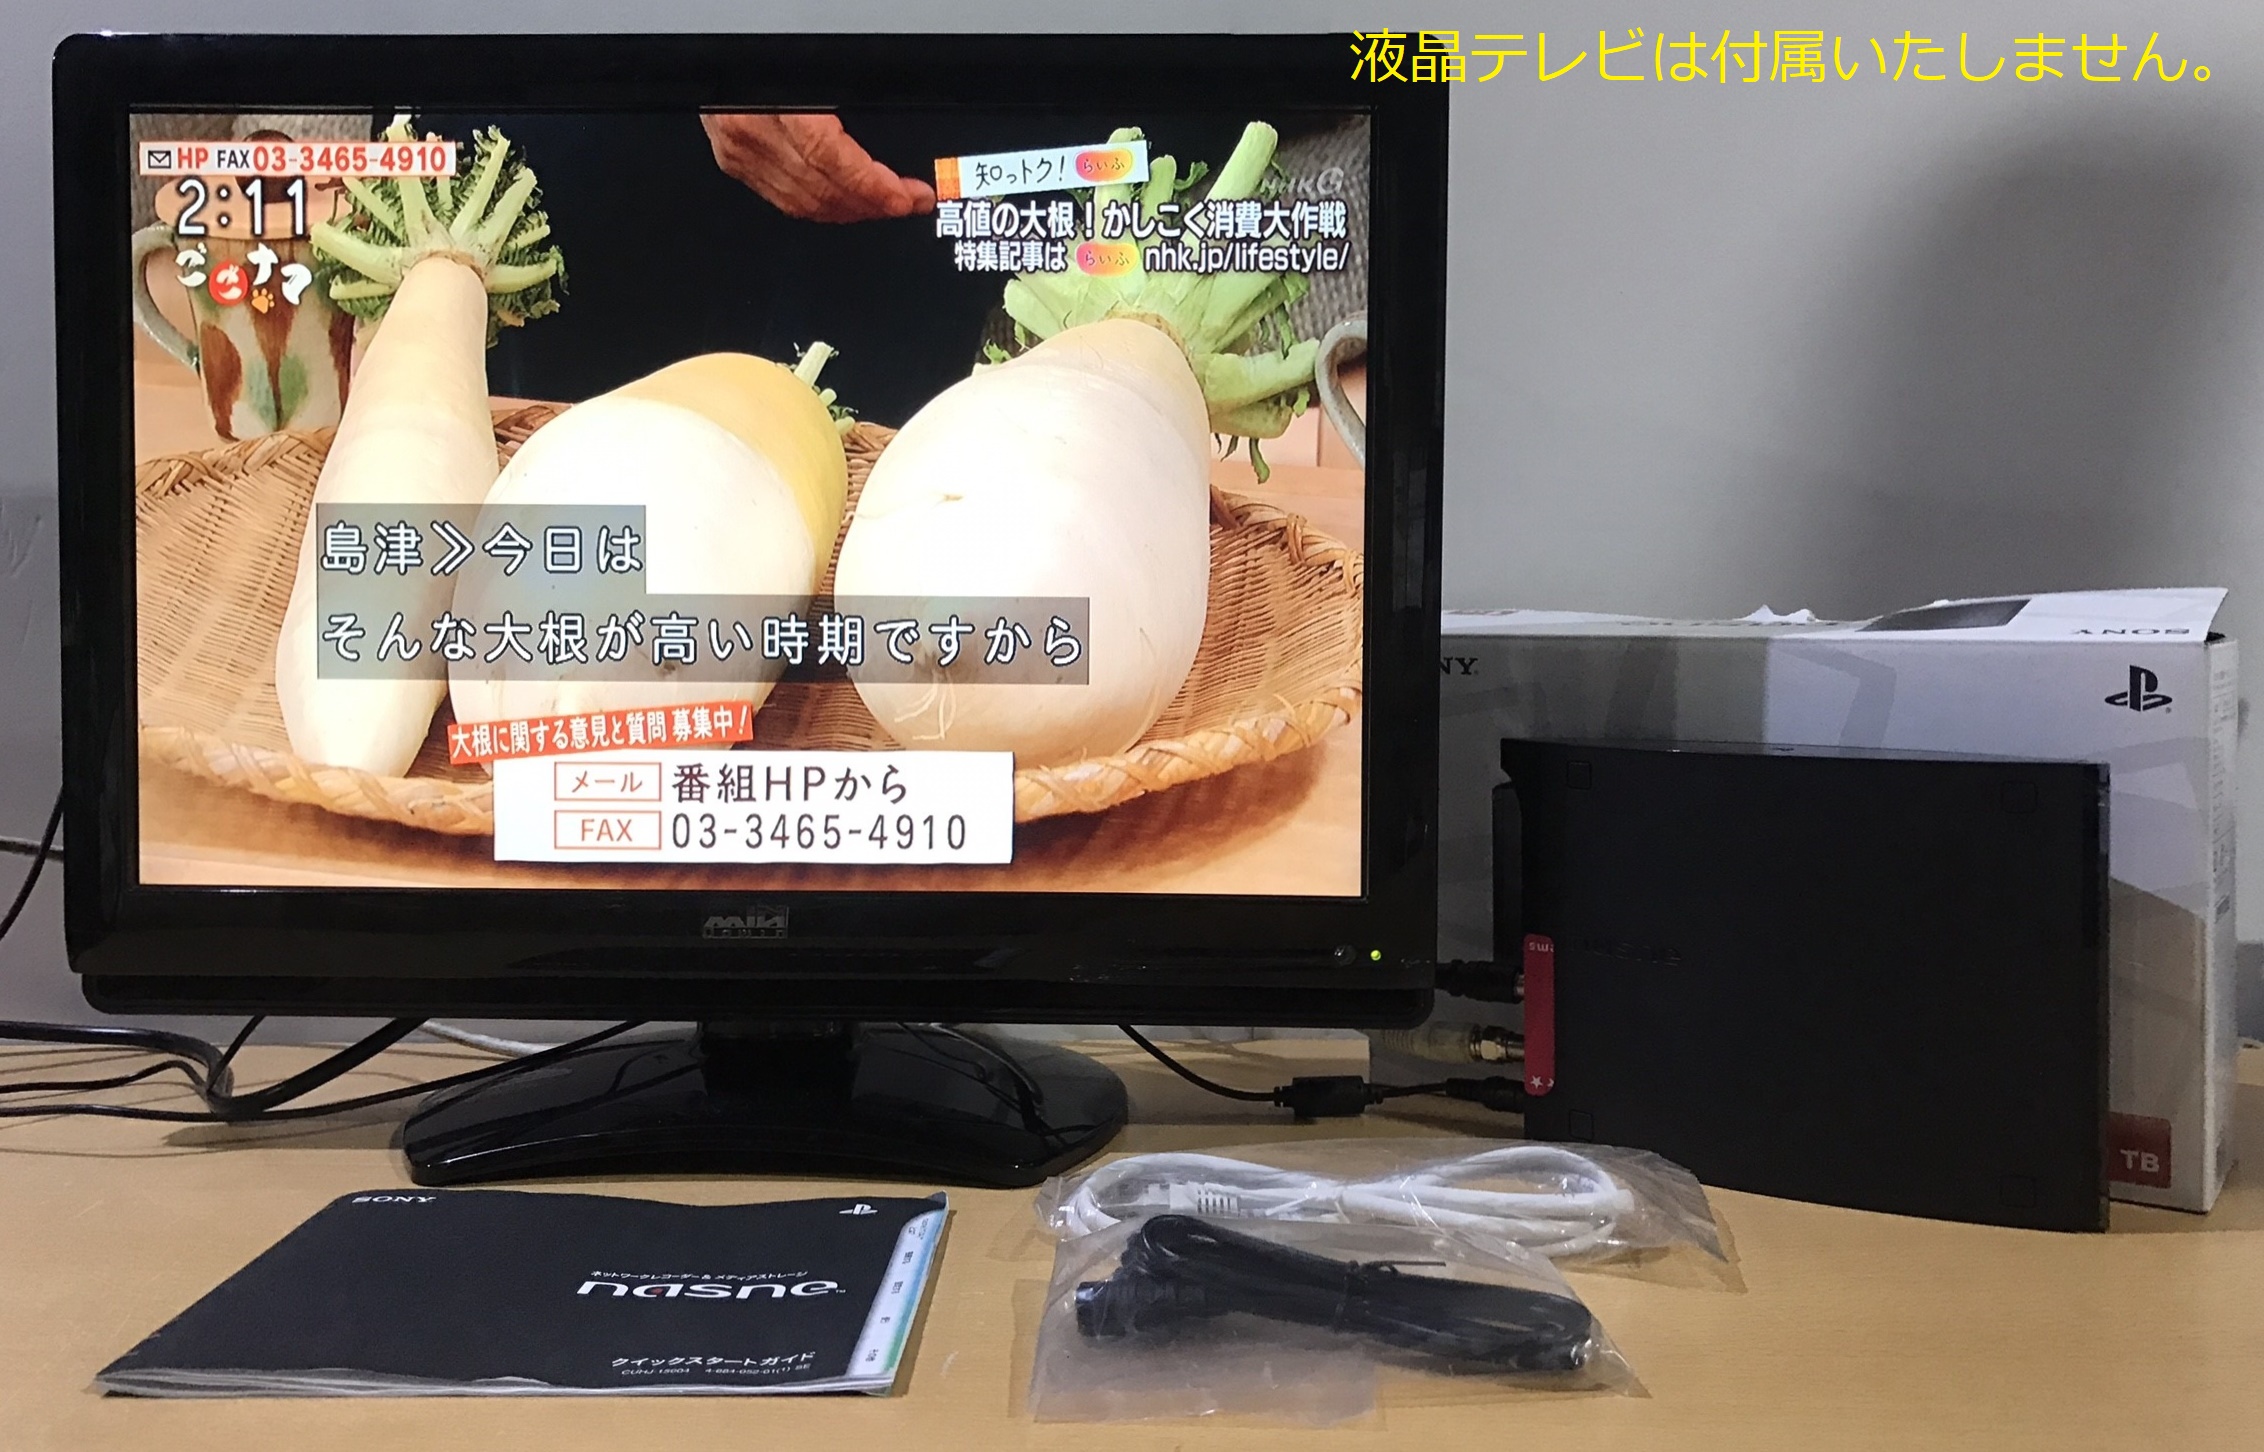 ゲーム買取価格情報 大阪市北区 店頭でのお買取 SONY SIE nasne ネットワークレコーダー メディアストレージ CUHJ-15004